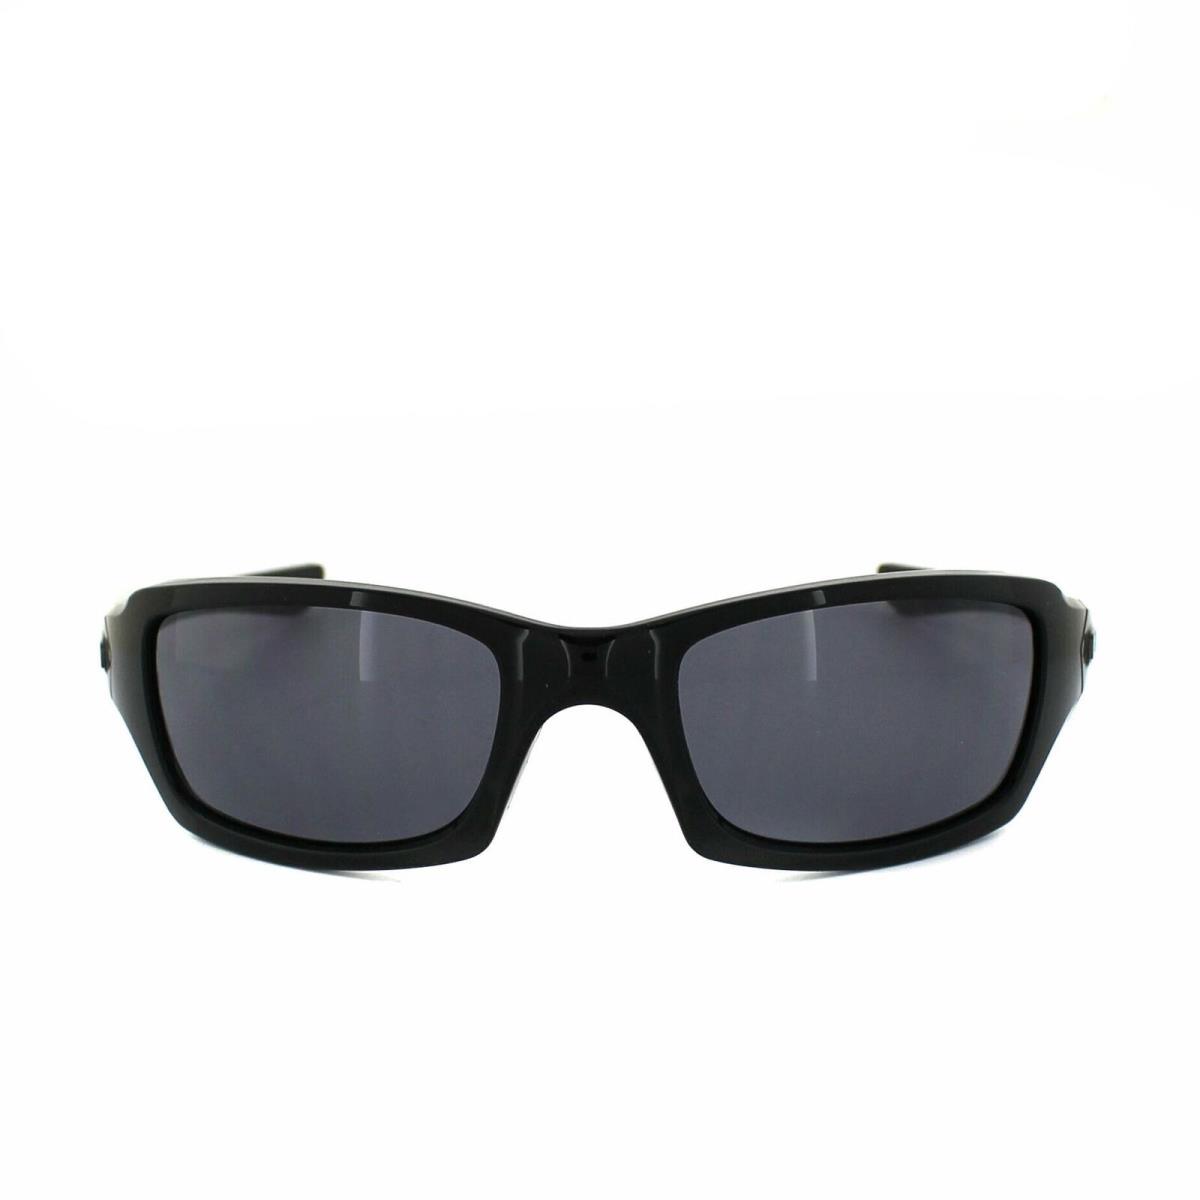 OO9238-04 Mens Oakley Fives Squared Sunglasses - Polished Black/grey - Frame: Black, Lens: Gray